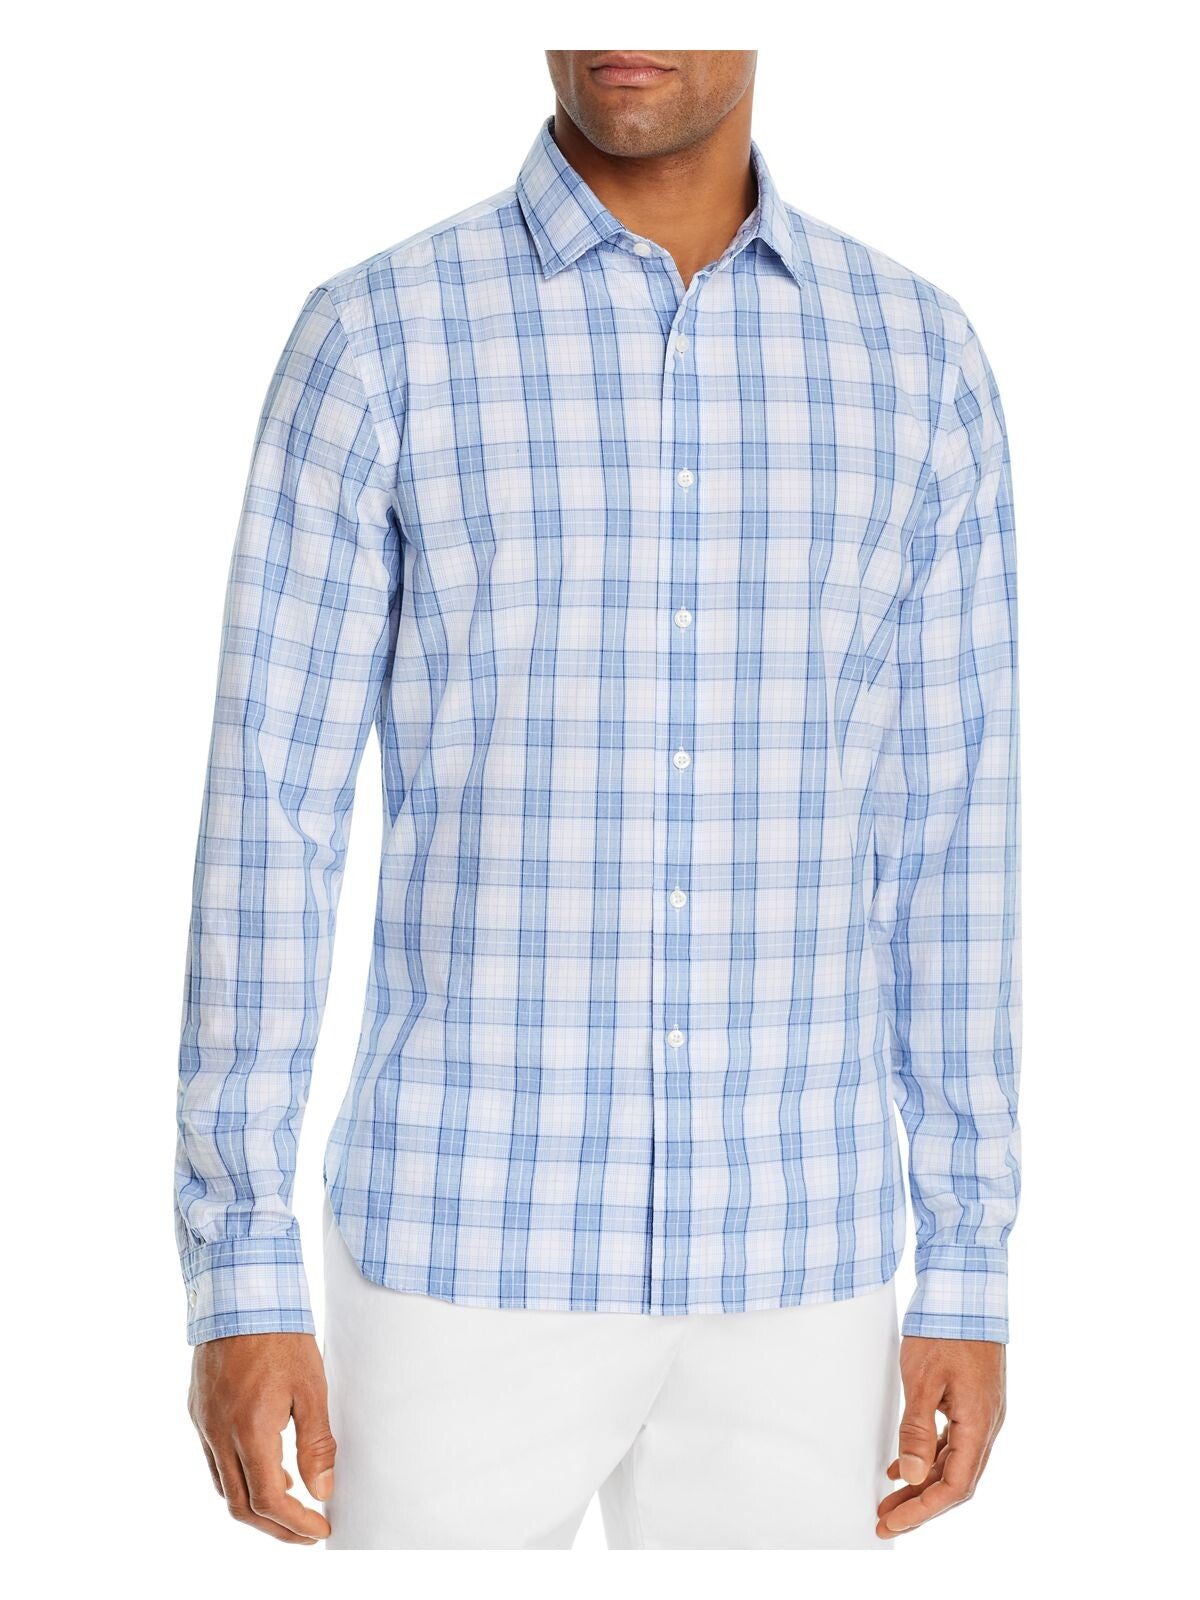 The Mens store Mens Blue Tartan Plaid Casual Shirt 2XL